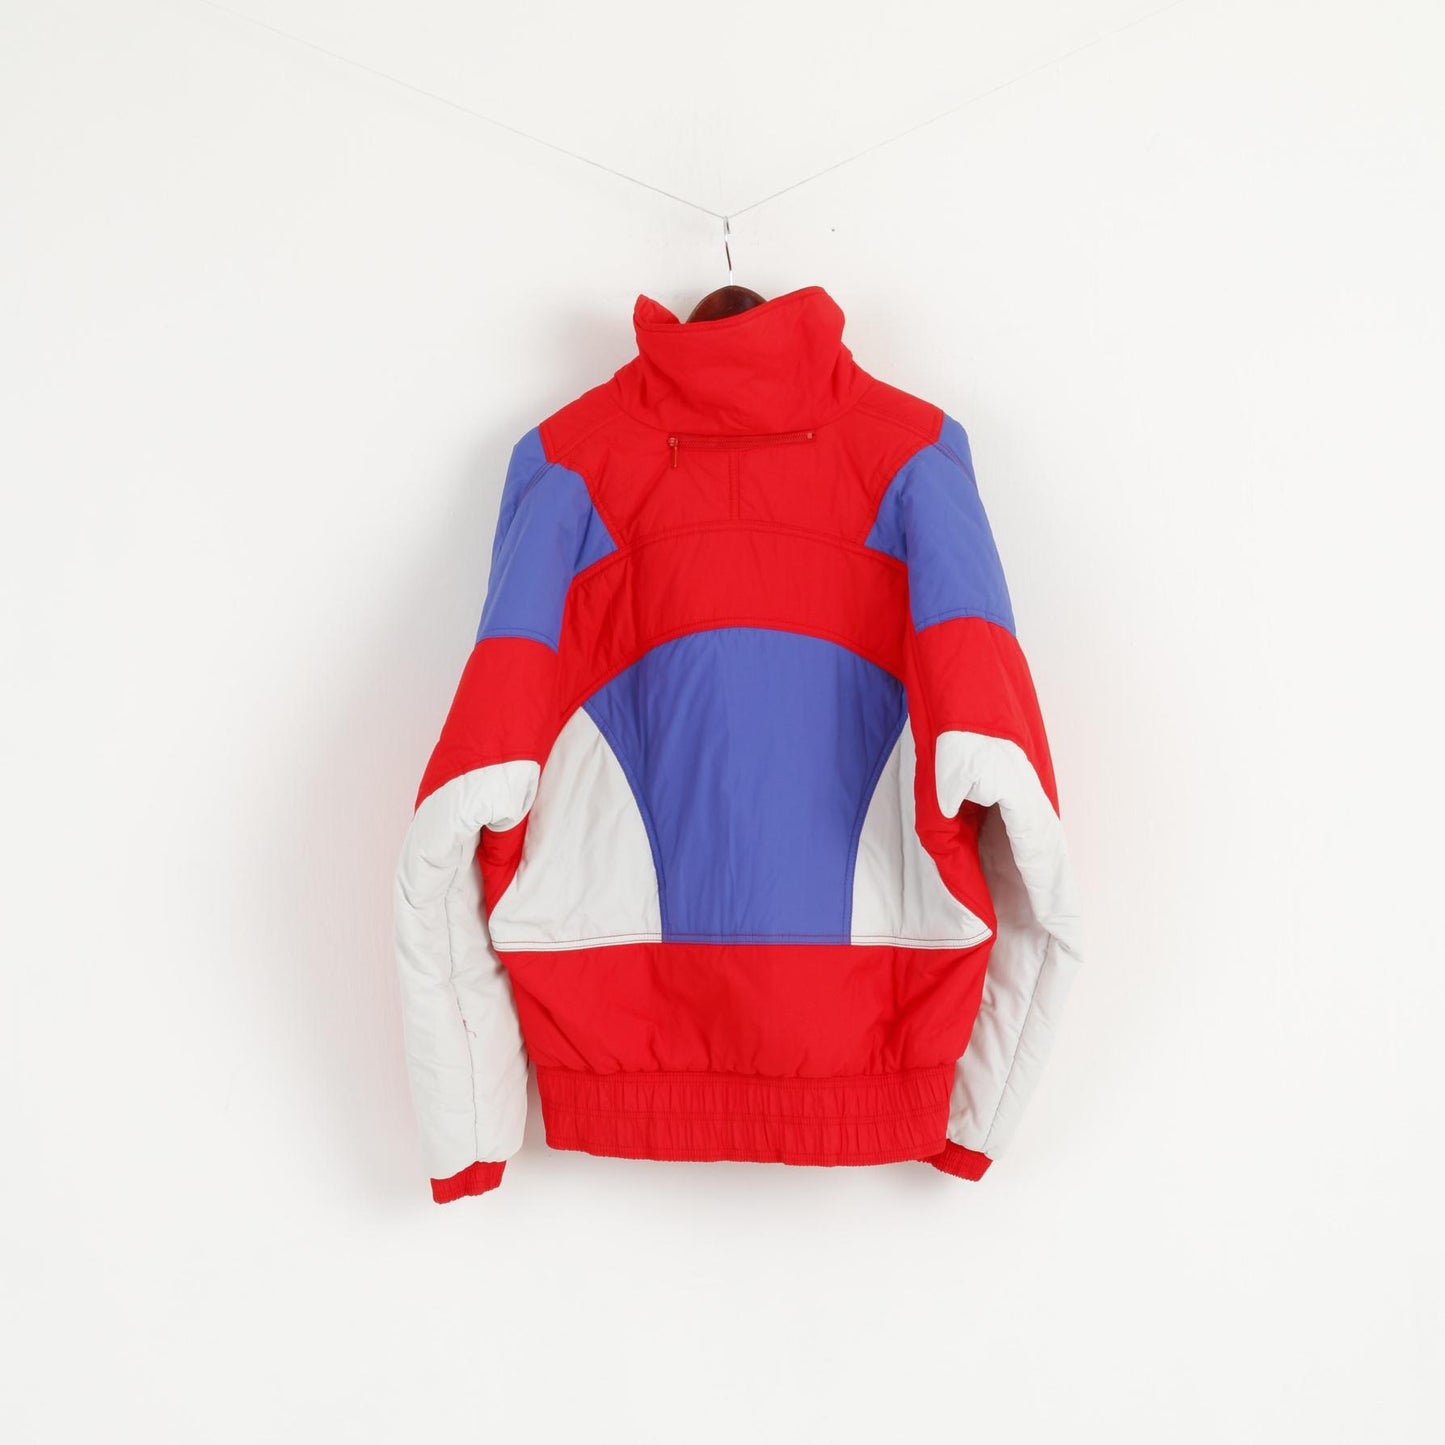 MICRO By Ellesse Men 54 L Jacket Ski Red Nylon Waterproof Italy Vintage 80s